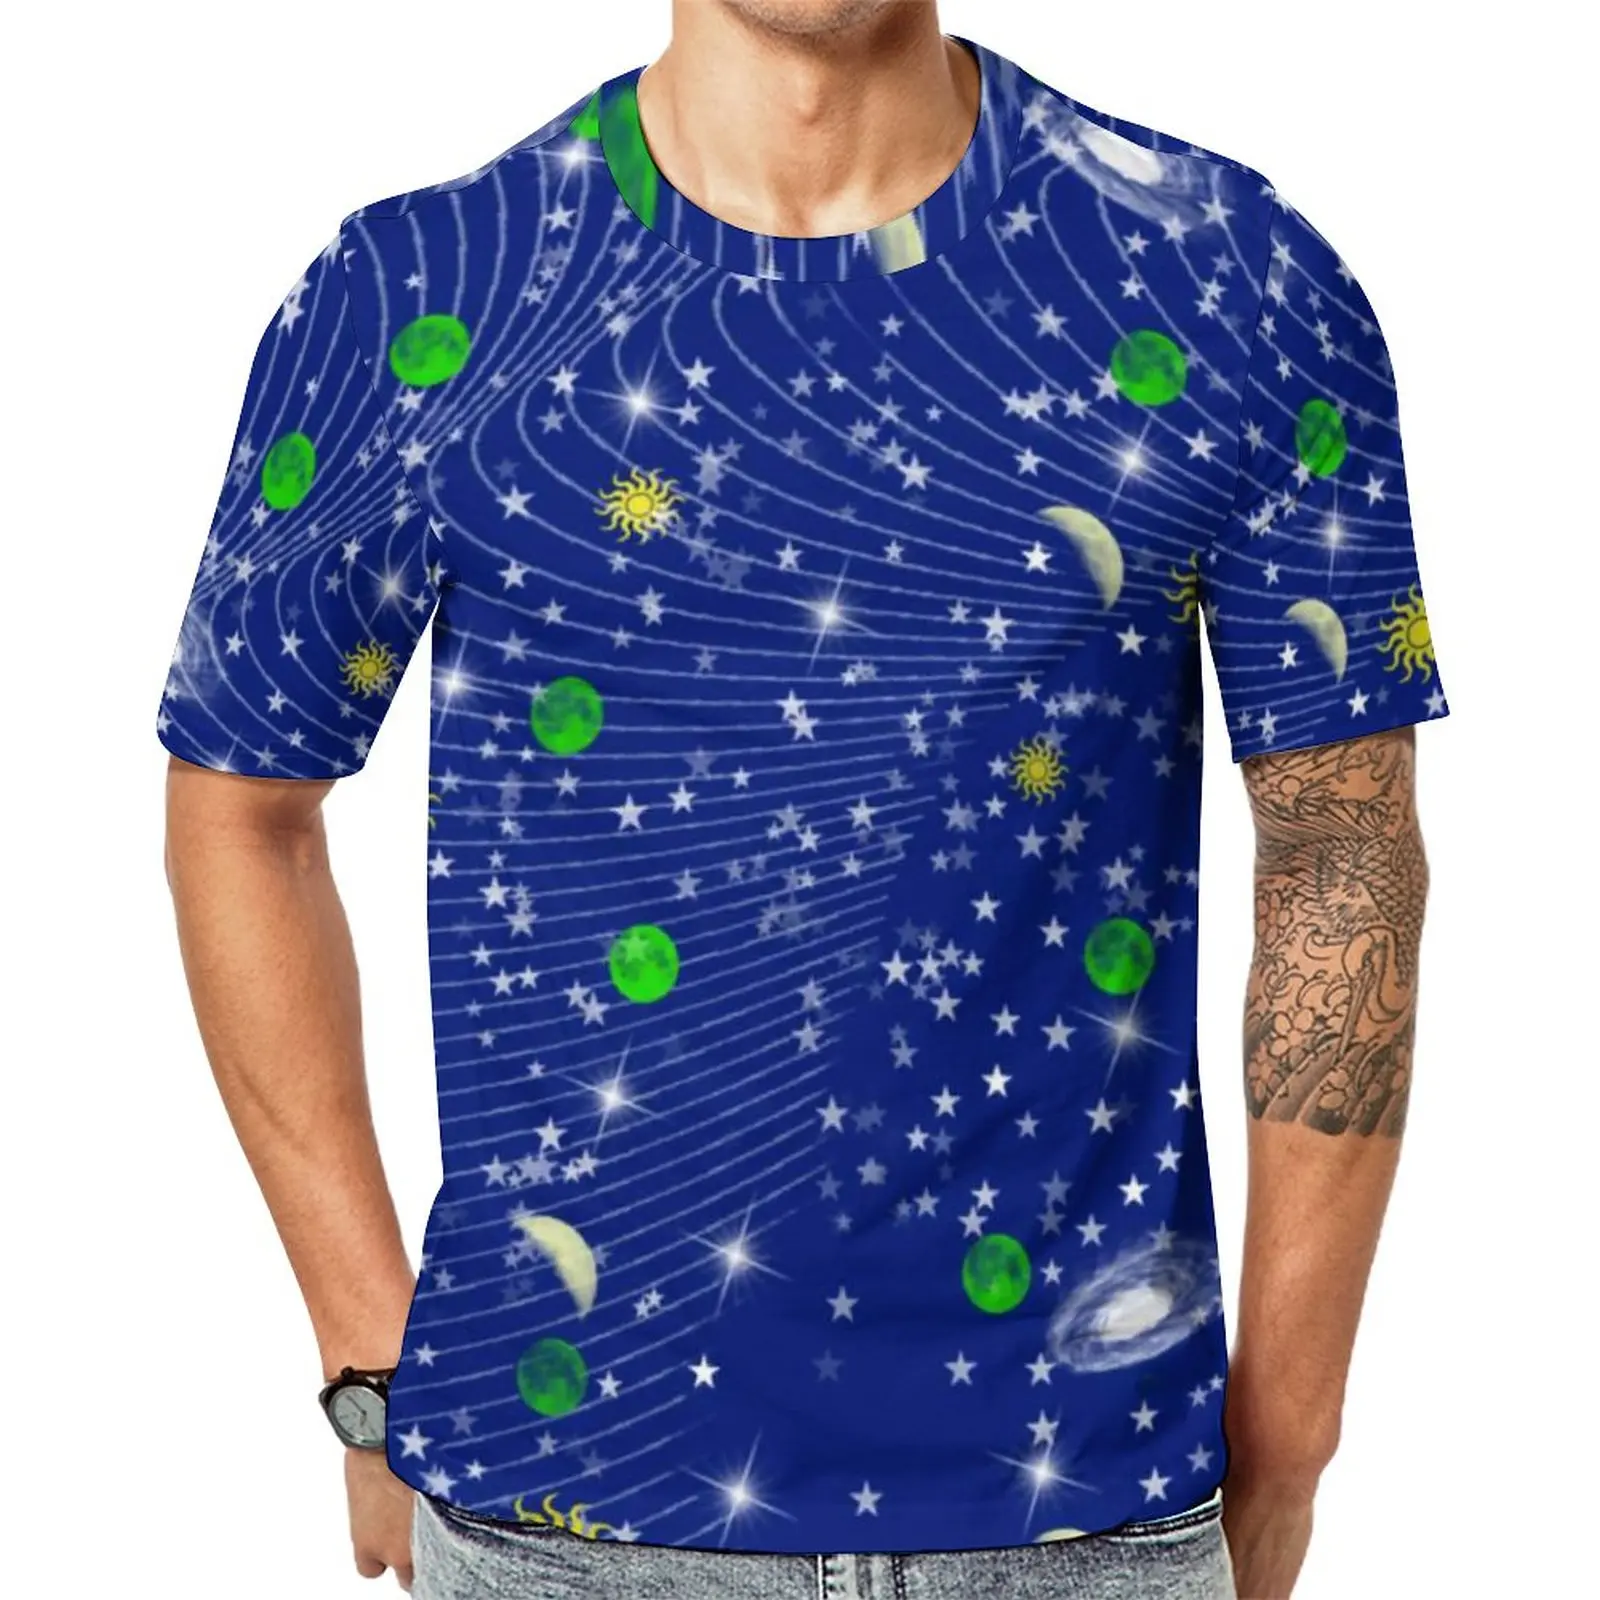 

Футболка с изображением синего солнца, звезд, Луны, крутые футболки с абстрактным изображением Галактики, футболка с коротким рукавом и принтом, популярная летняя базовая одежда большого размера